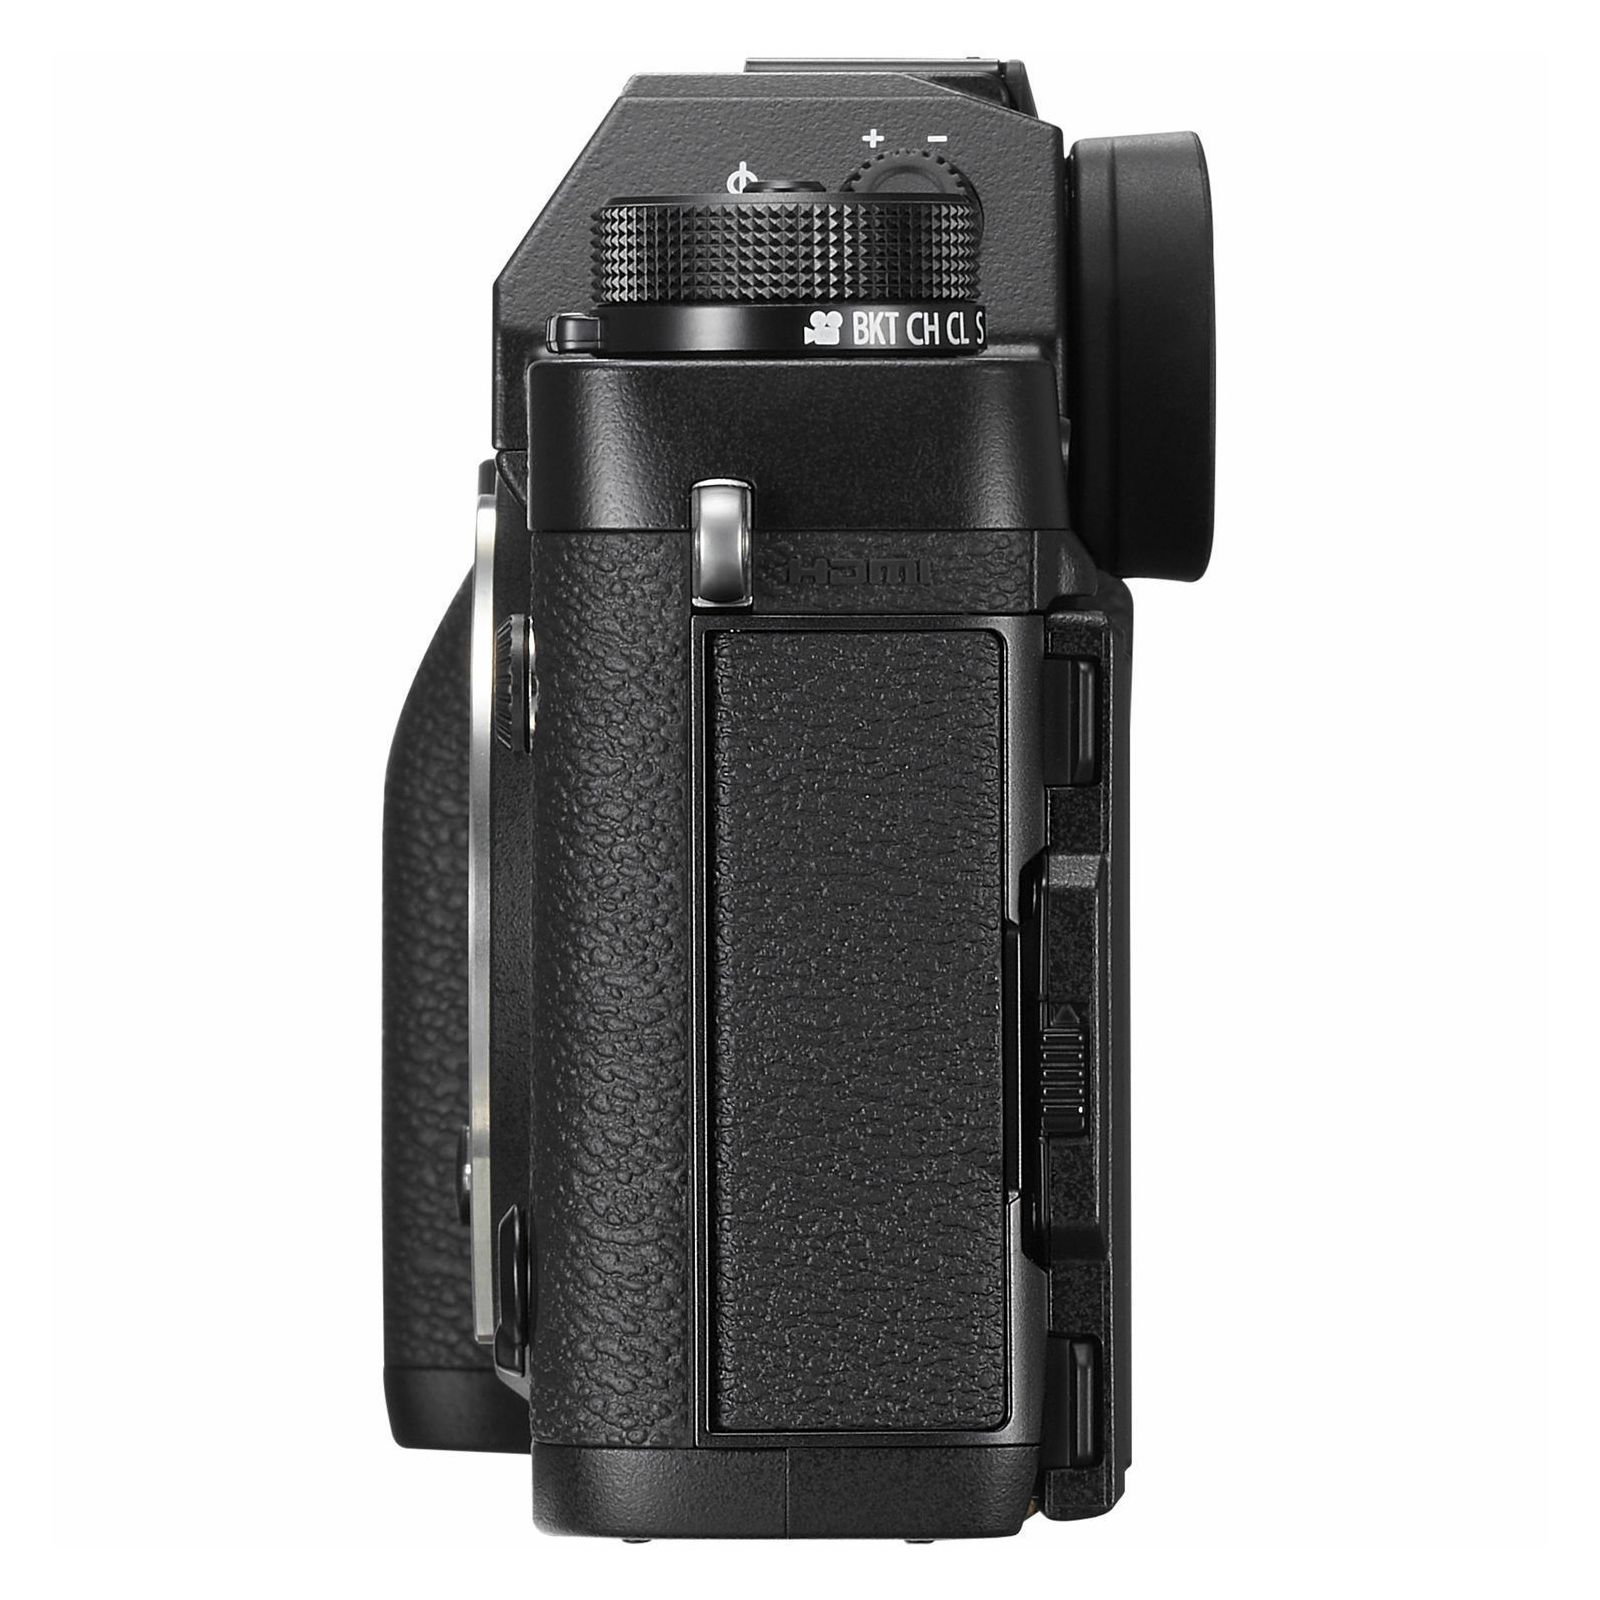 Fujifilm X-T2 Body Mirrorless Digital Camera Fuji fotoaparat 24MP X-Trans CMOS III 3,0" LCD 1040K + OVF 3 way Tilt